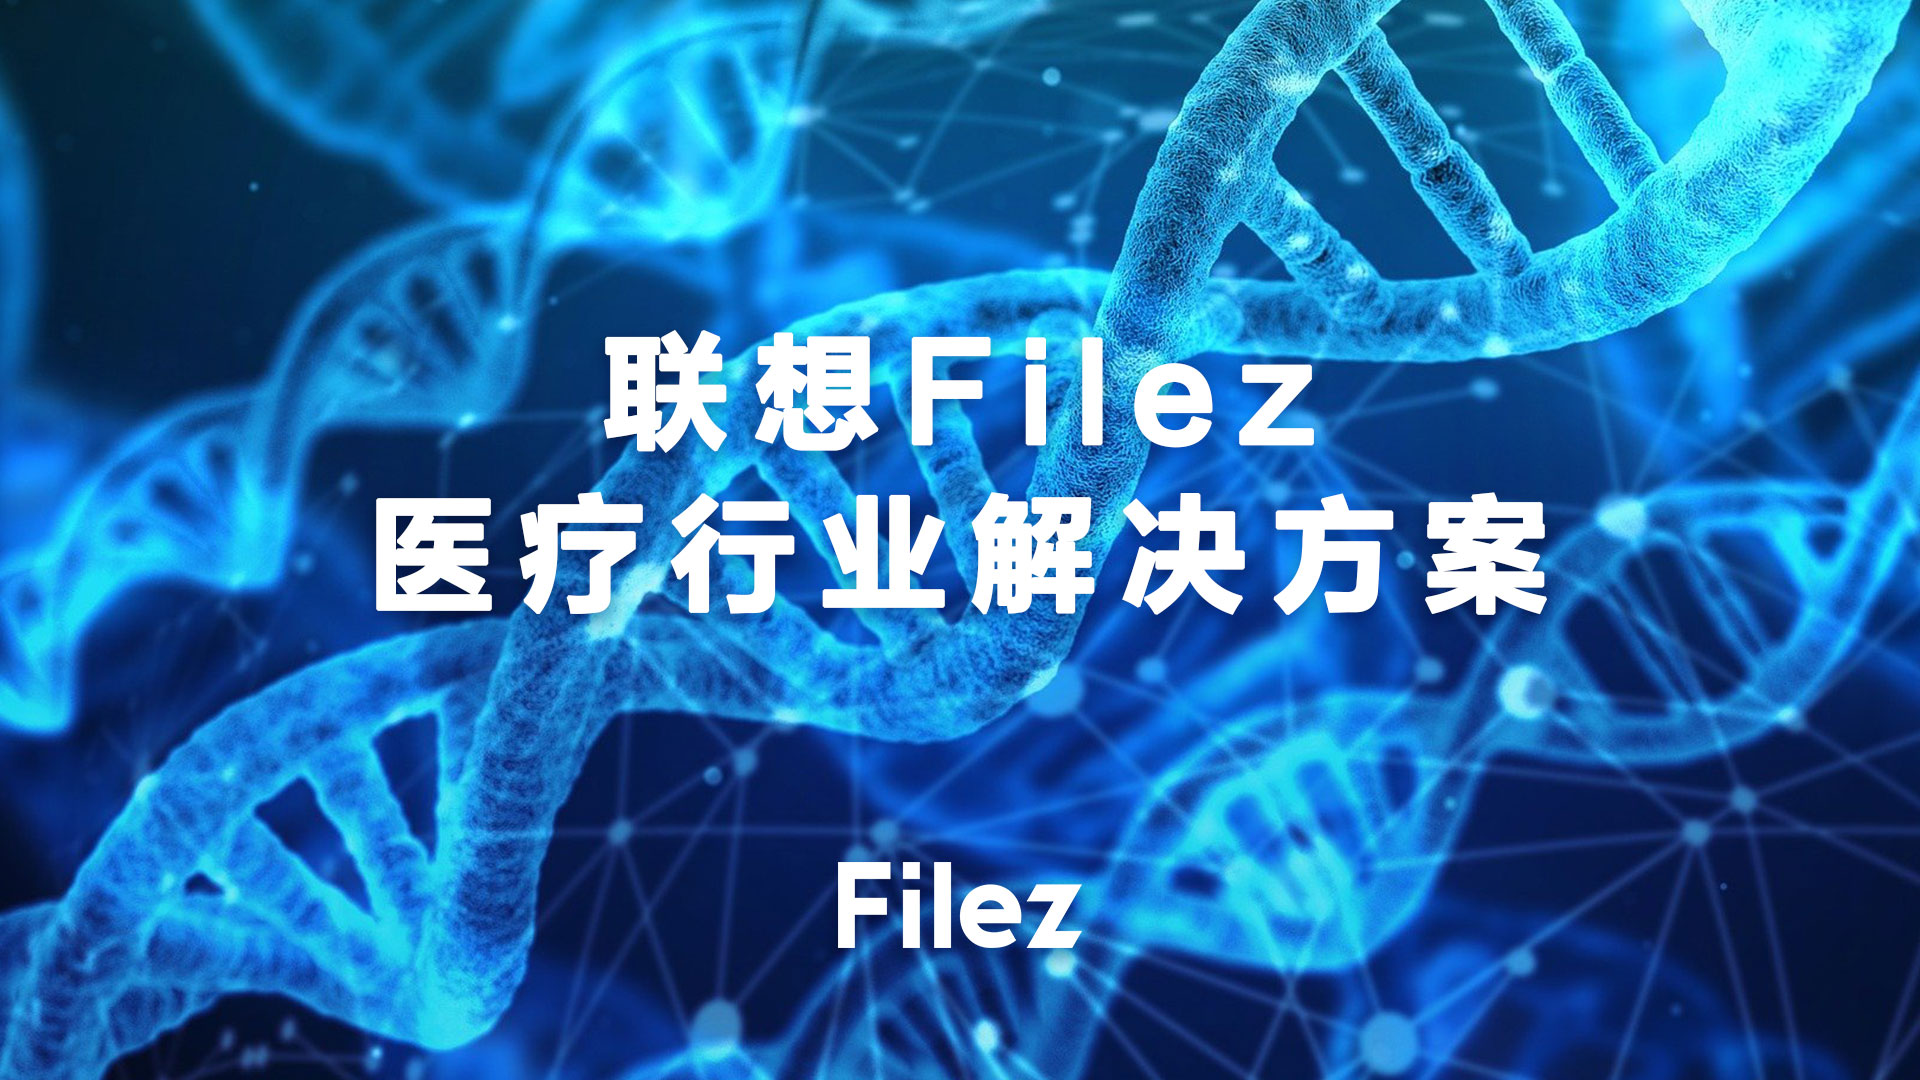 联想Filez跨网交换，让传输更高效！